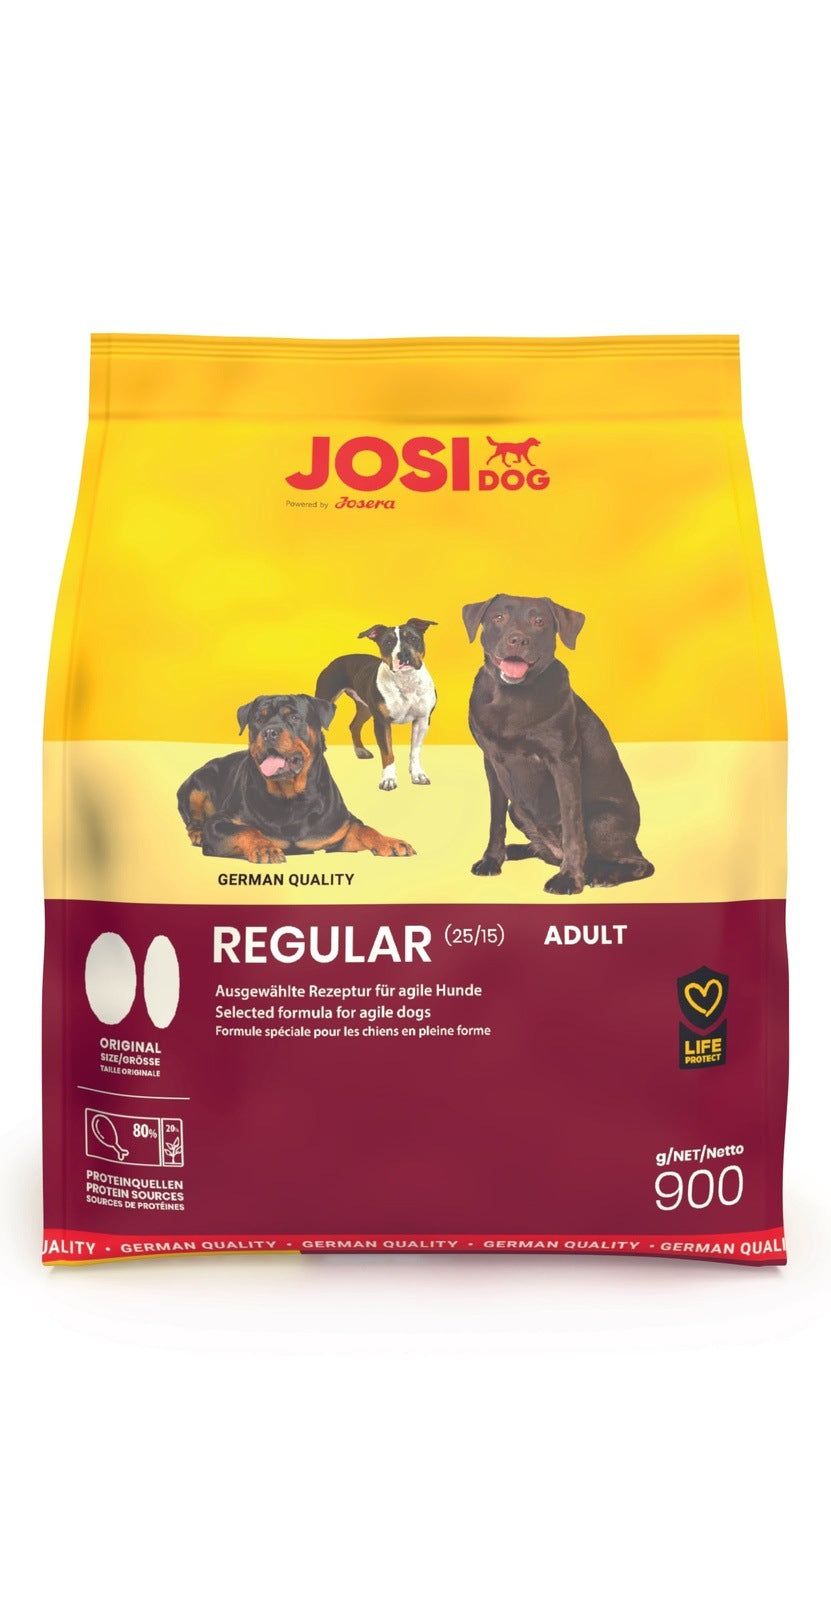 Artikel mit dem Namen JosiDog Regular im Shop von zoo.de , dem Onlineshop für nachhaltiges Hundefutter und Katzenfutter.